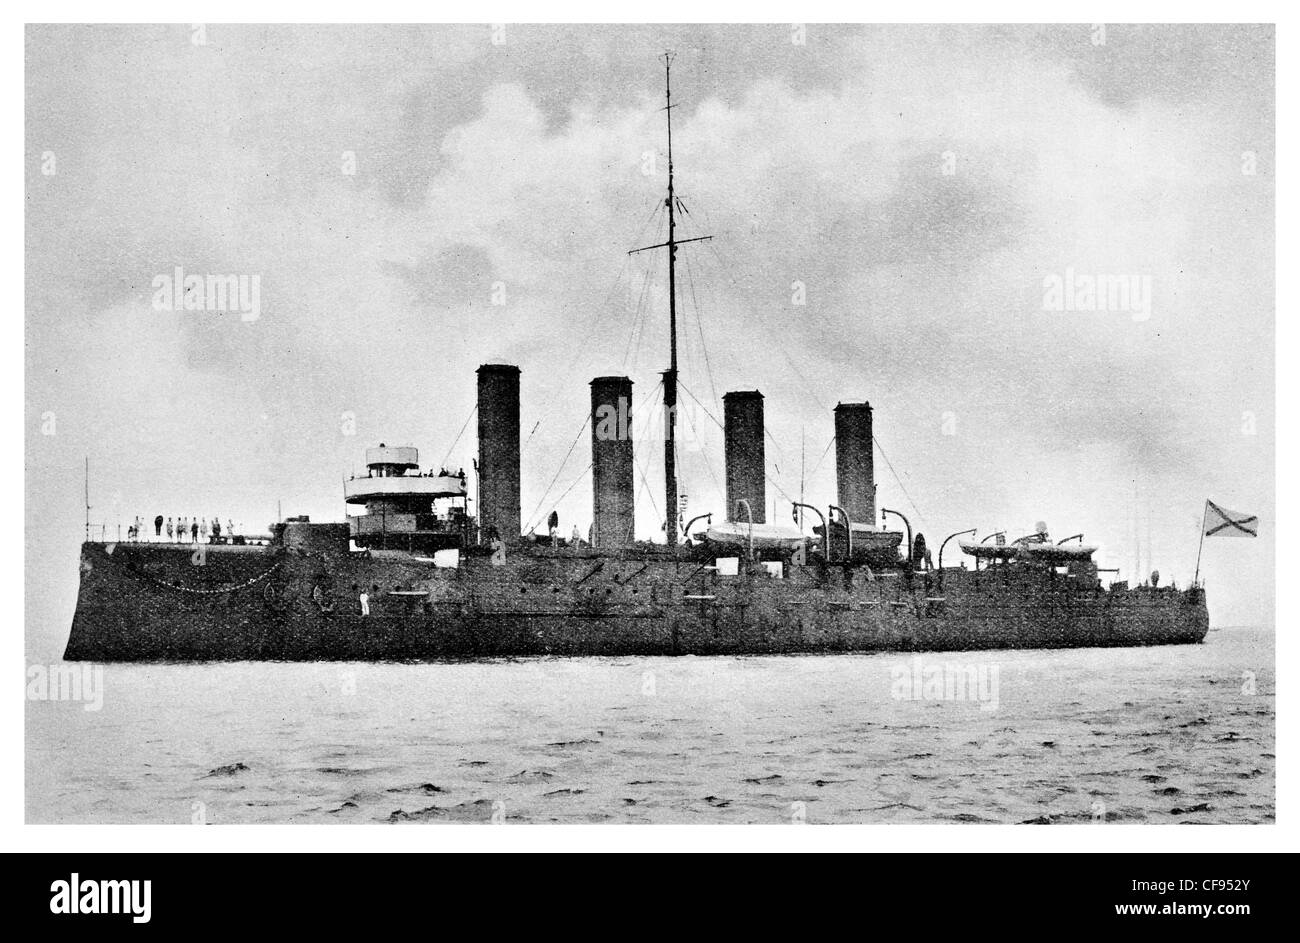 Croiseur Pallada russe Bayan-croiseurs cuirassés de classe construite pour la Marine impériale russe de la flotte Baltique coulé par U-26, 11 Octobre 1914 Banque D'Images